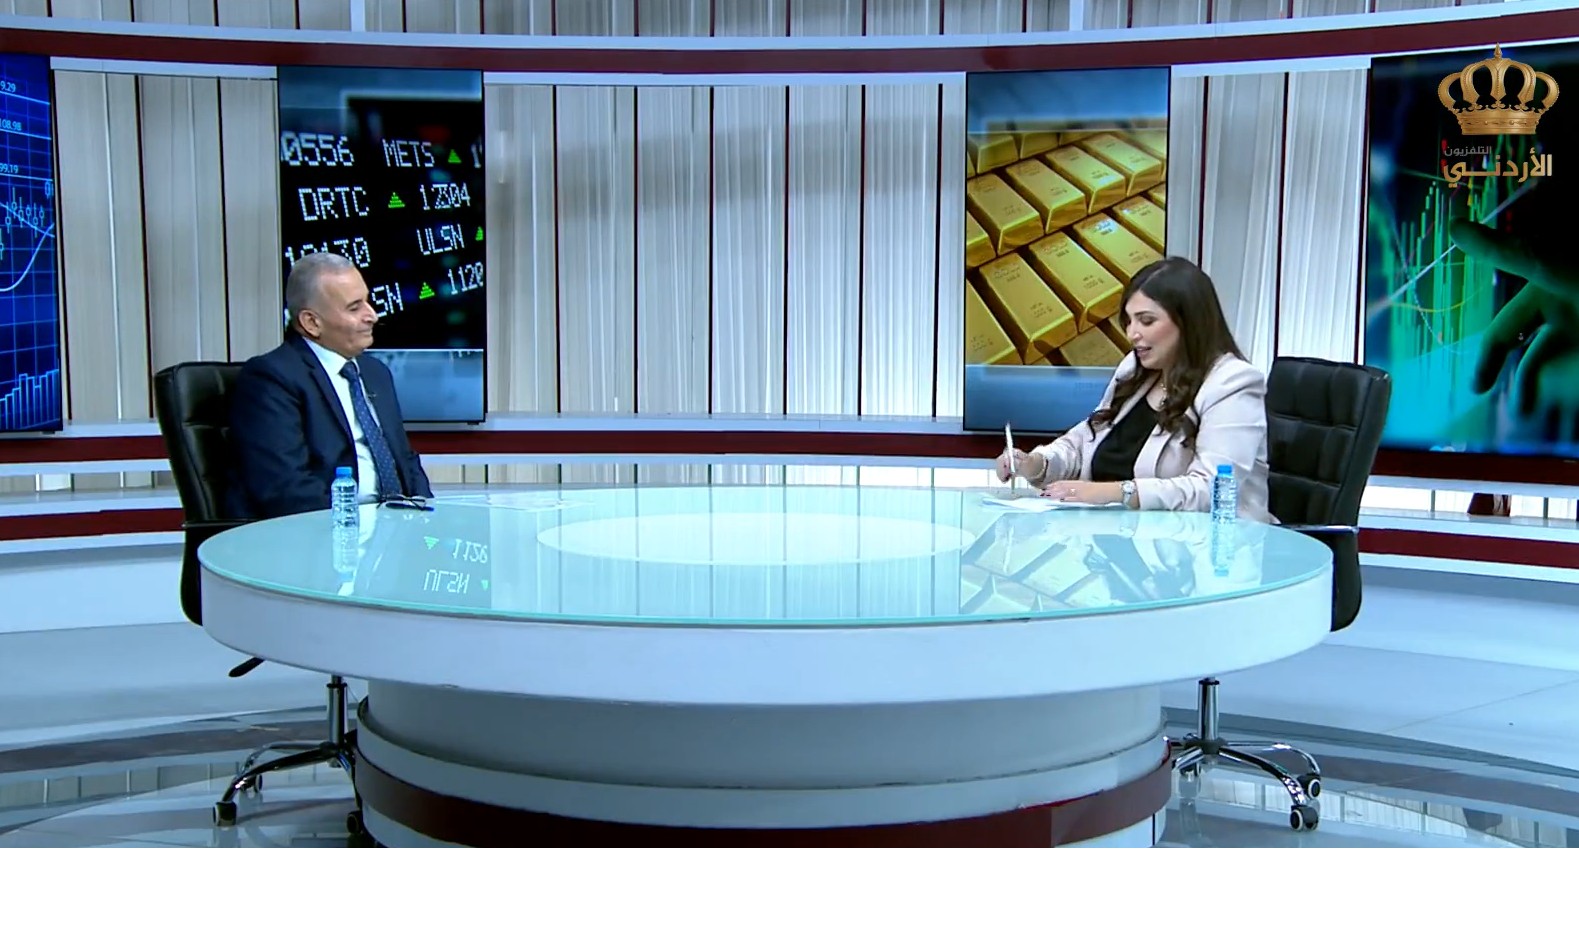 مقابلة م.عماد الطراونة مدير عام الشركة العامة الأردنية للصوامع والتموين برنامج مال وأعمال التلفزيون الأردني